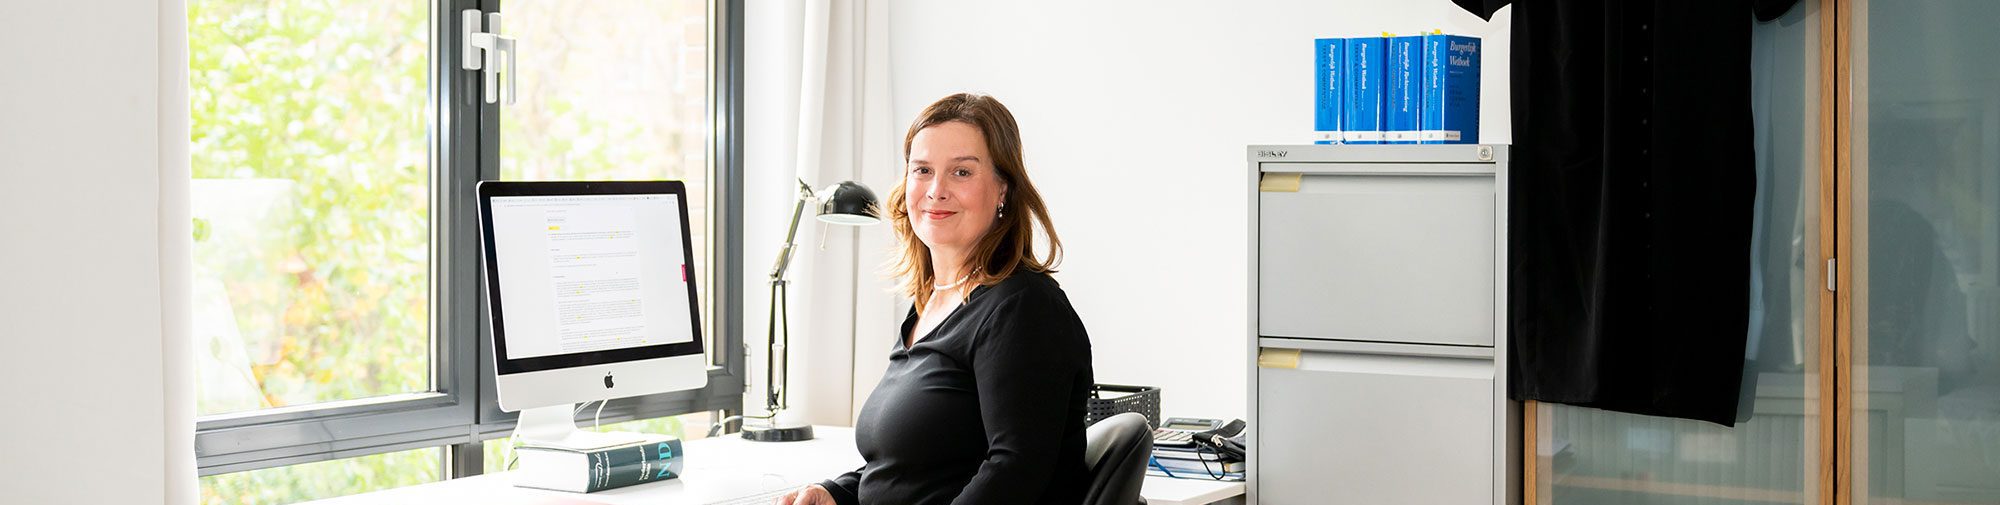 Marieke Jansen al meer dan 25 jaar letselschade advocaat